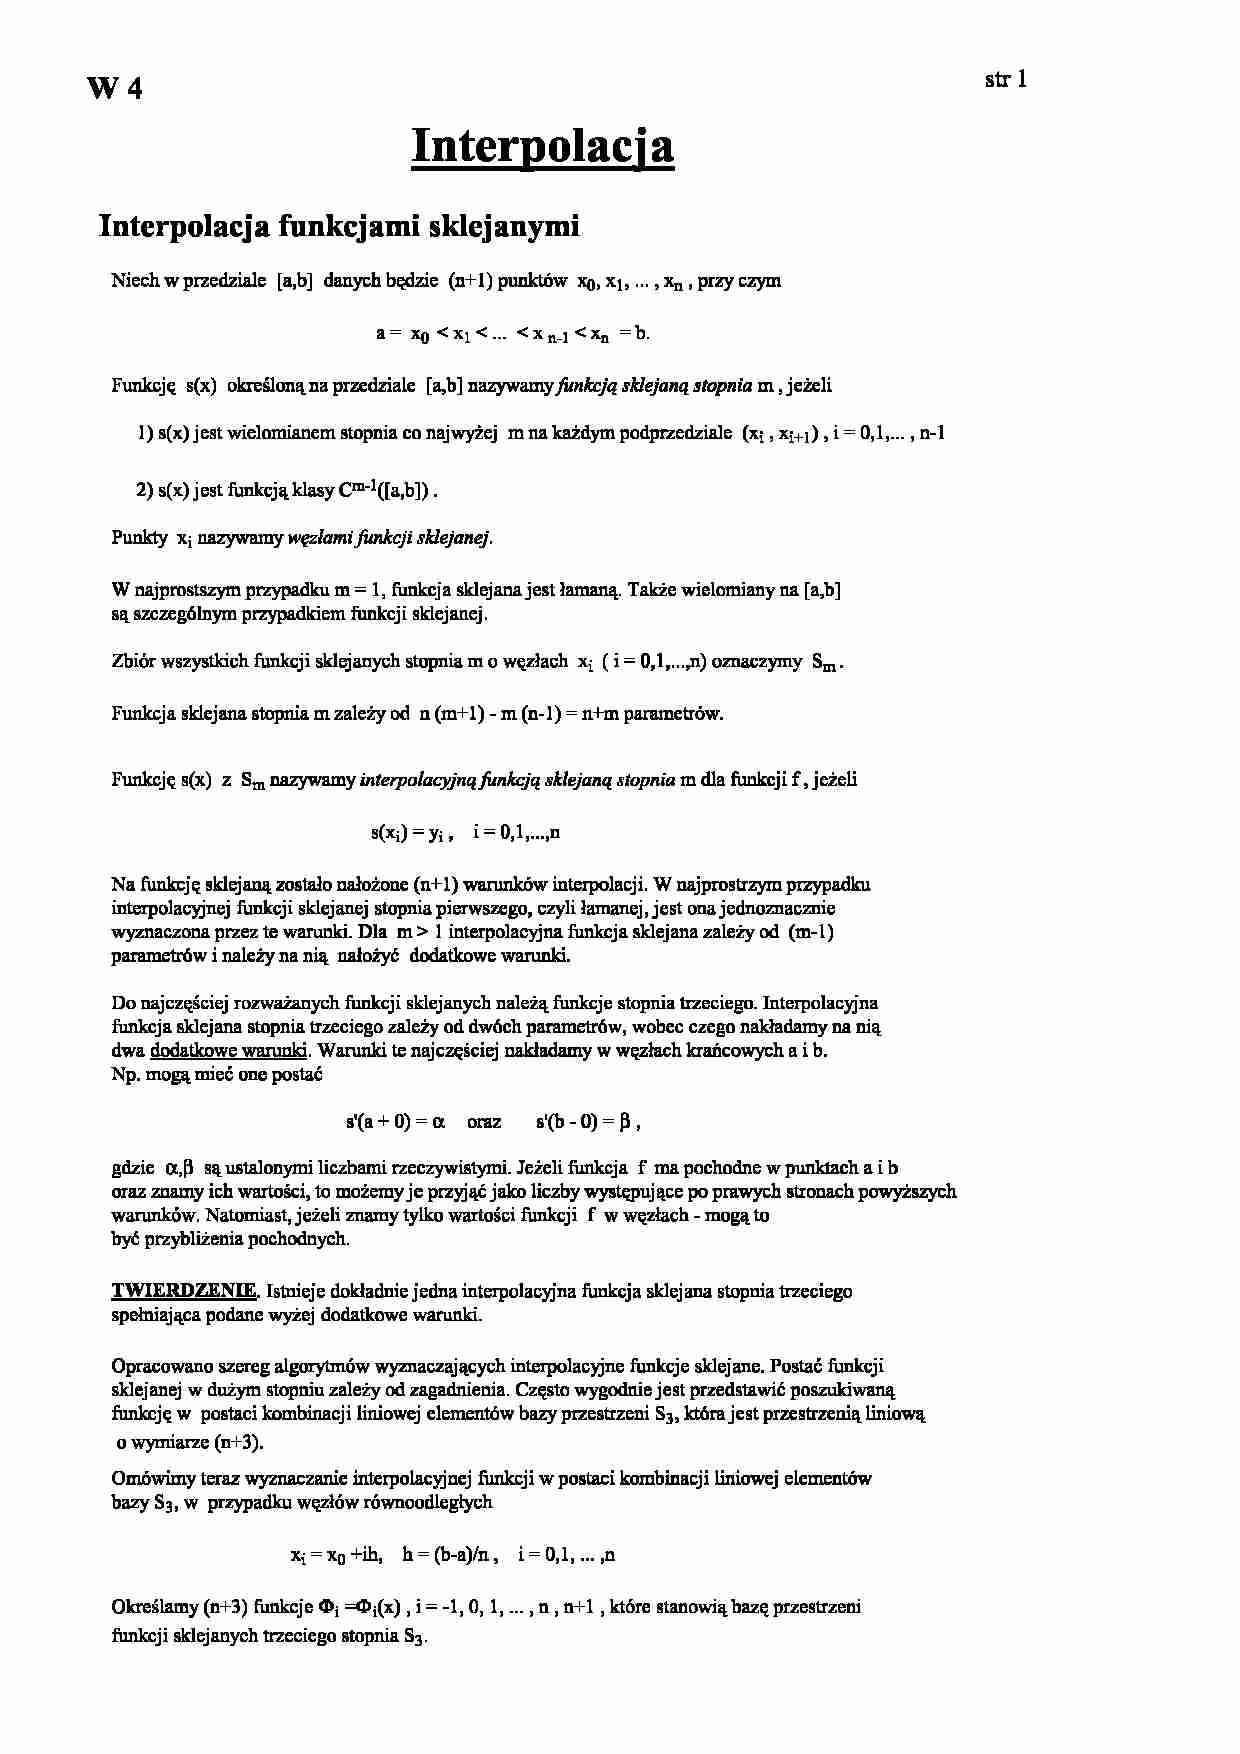 Interpolacja funkcjami sklejanymi - omówienie - strona 1